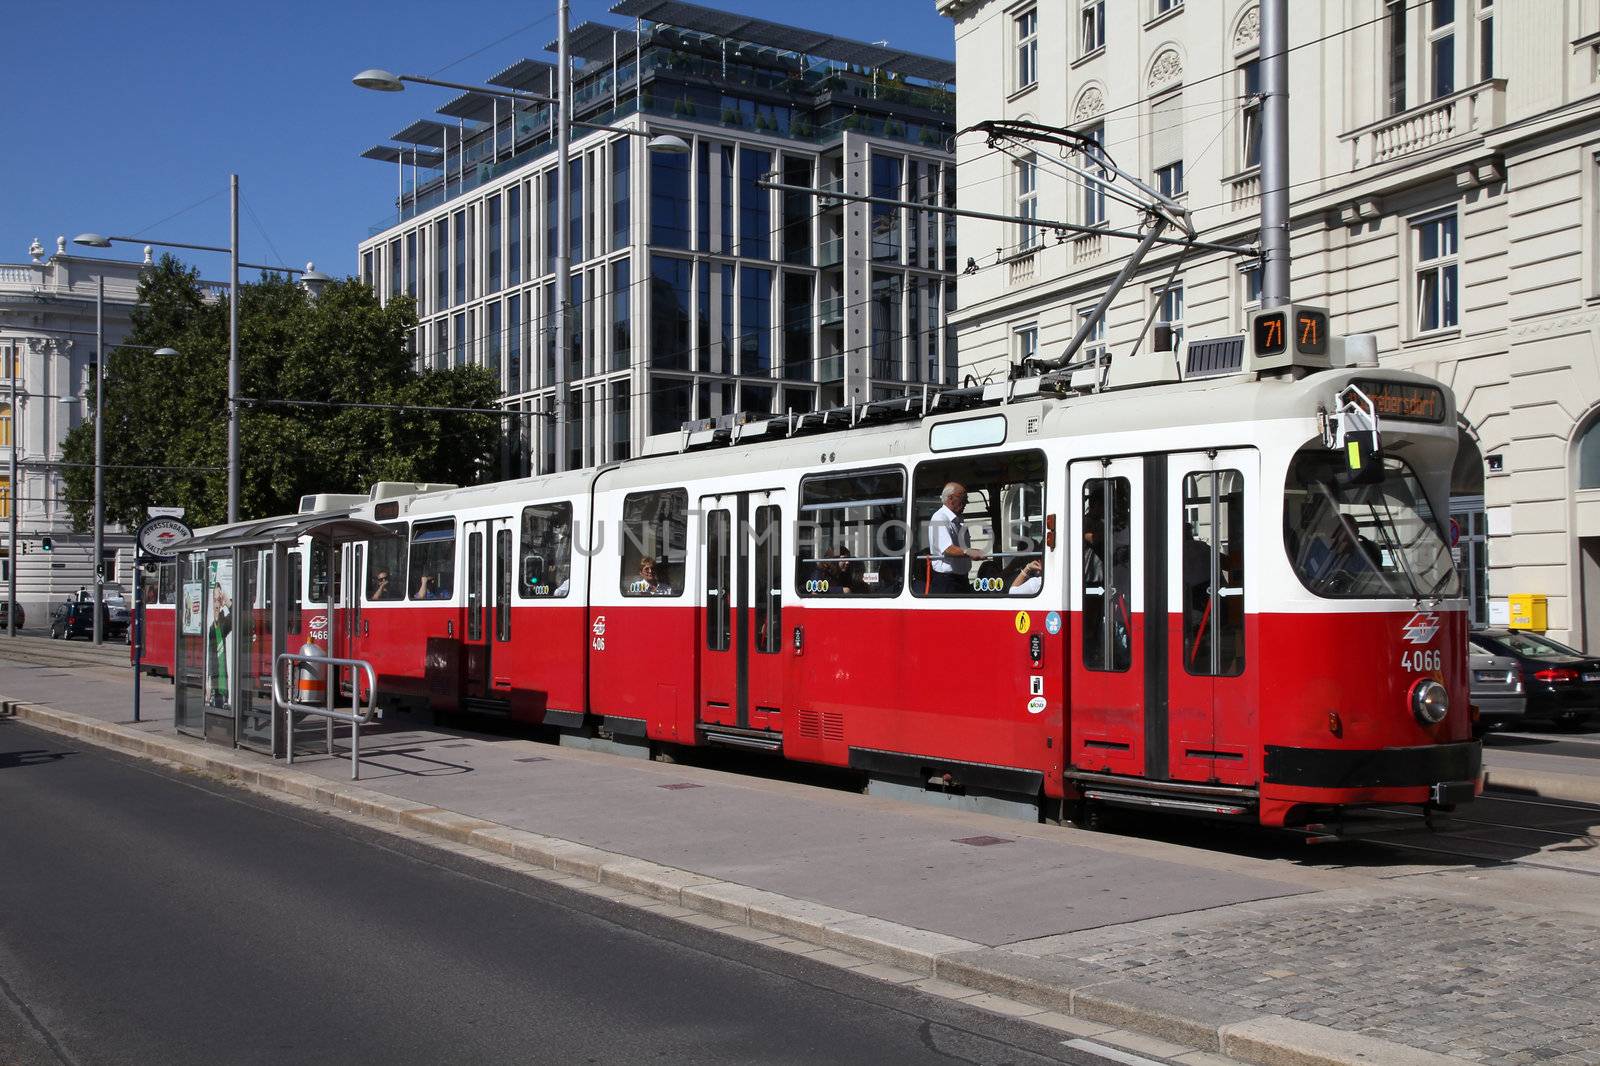 Vienna tram by tupungato